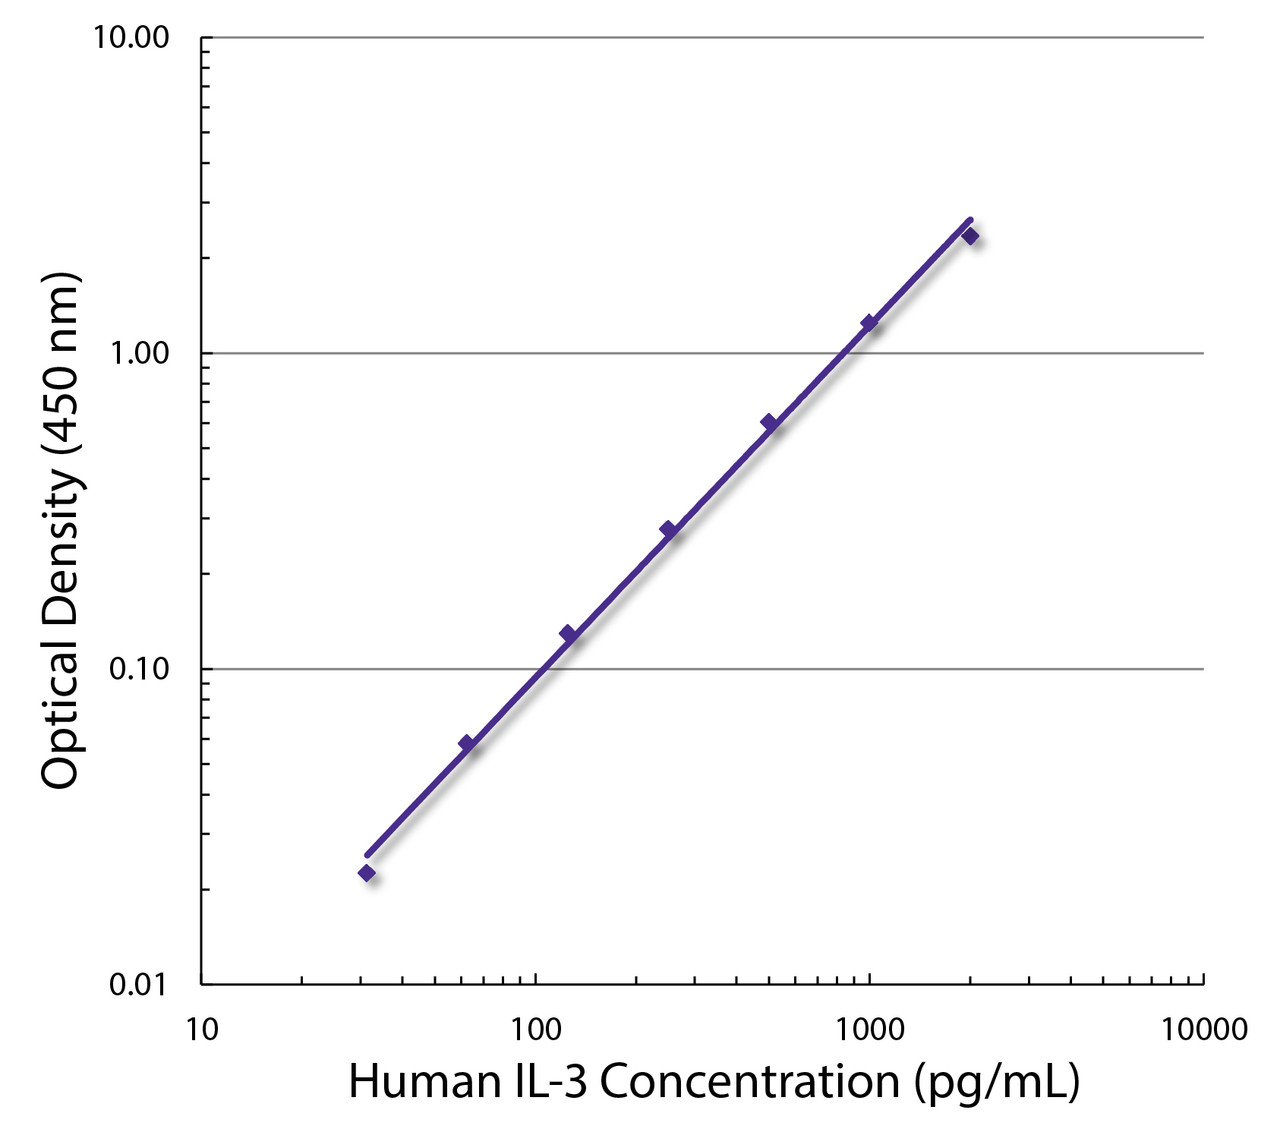 Standard curve generated with Rat Anti-Human IL-3-UNLB (Cat. No. 99-649; Clone BVD8-3G11) and Rat Anti-Human IL-3-BIOT (Clone BVD3-1F9) followed by Streptavidin-HRP